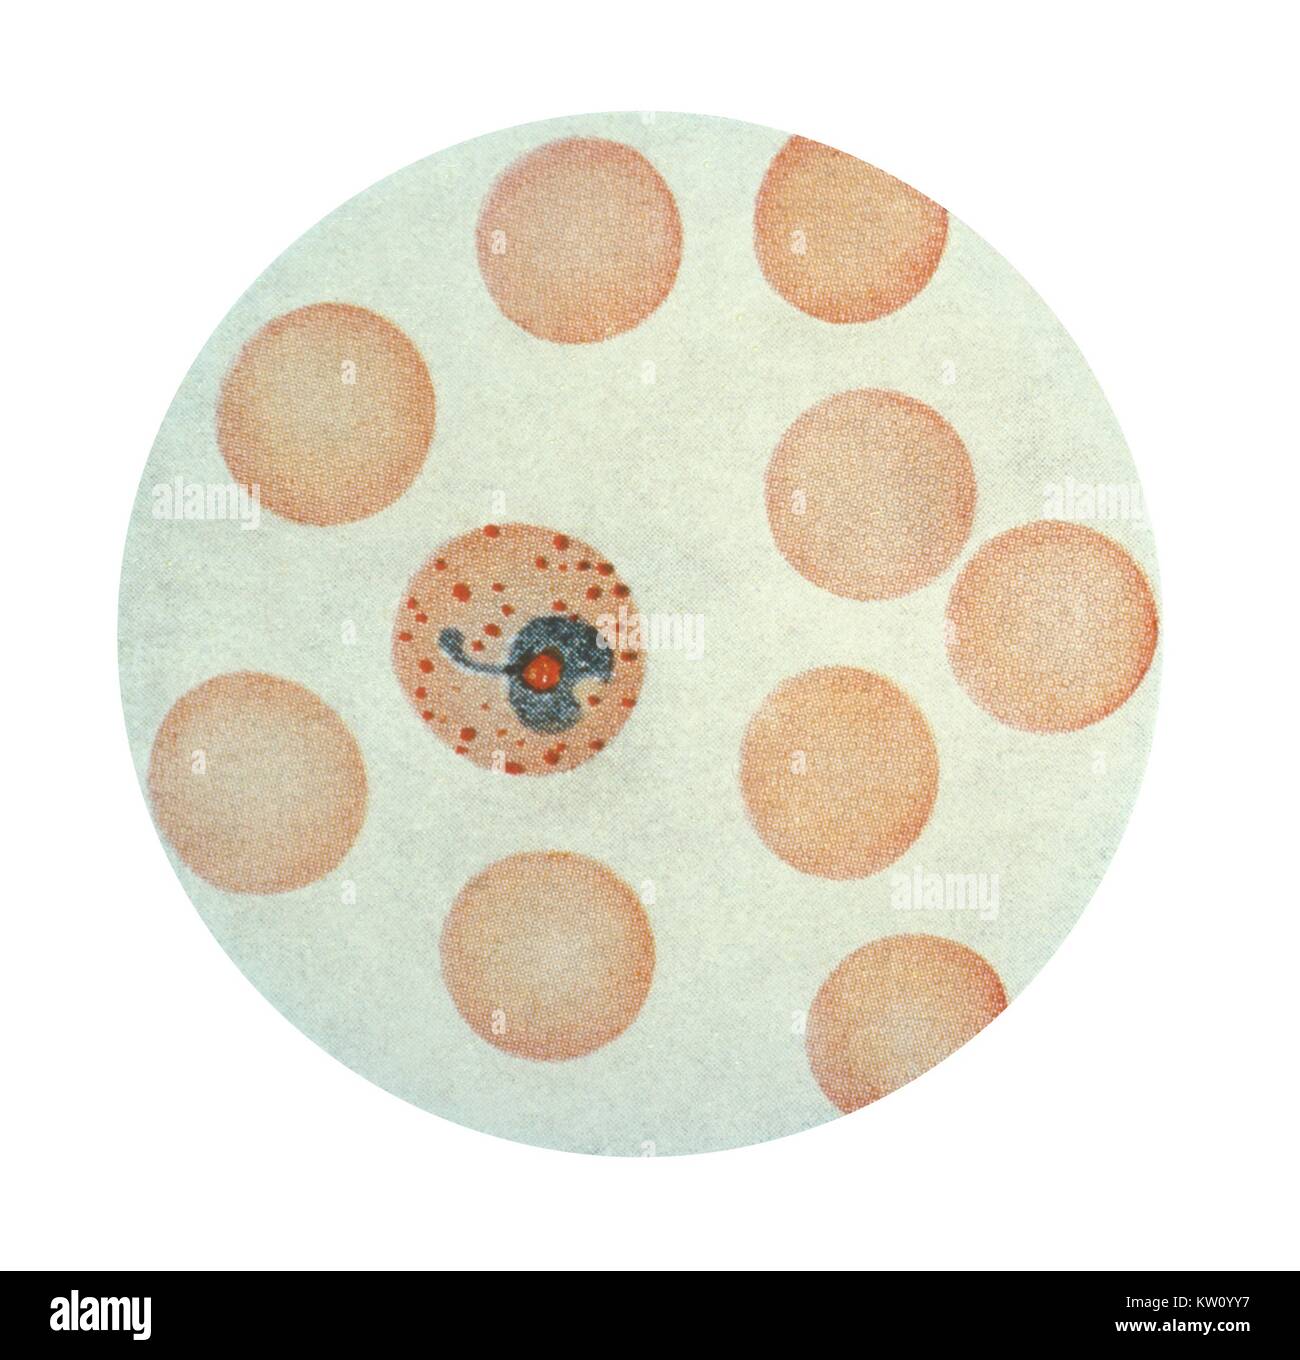 Eine photomicrograph Plasmodium vivax in seiner Anti-erythrozyten trophozoite Bühne, über Wrights Fleck. x 1500. Diese erythrozyten verfügt über einen ausgereiften trophozoite geworden, die in ein schizont im Anti-erythrozyten Zyklus des Malariaparasiten entwickeln. Hinweis Der erweiterten Stand der Erythrozyten mit zahlreichen Shuffner punkten. Mit freundlicher Genehmigung der CDC, 1979. Stockfoto